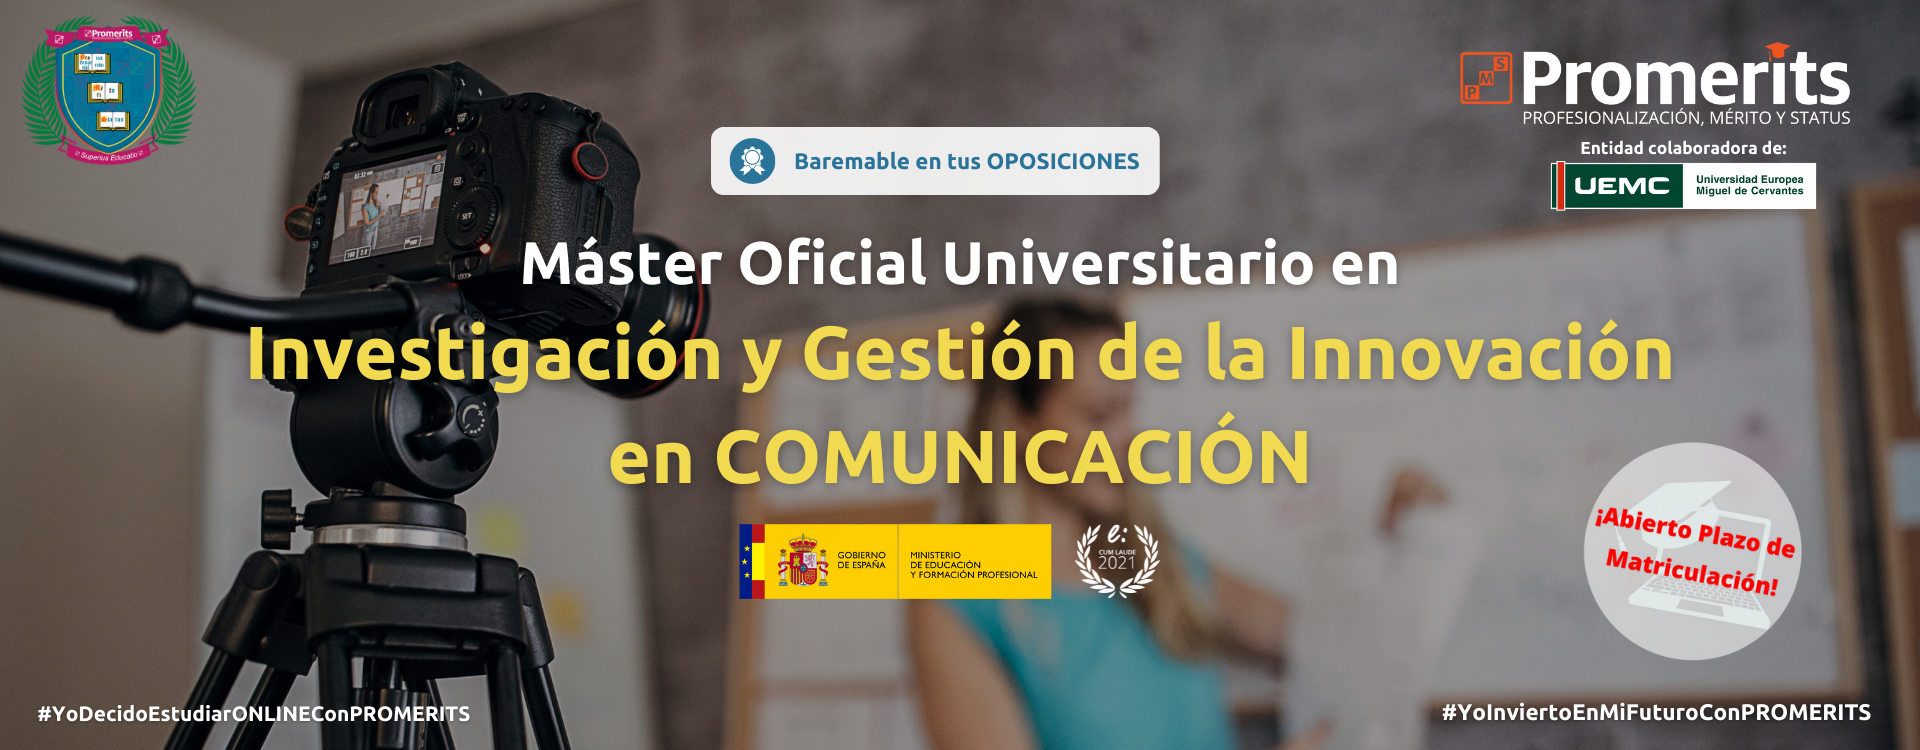 Curso Oficial Universitario en Investigación y Gestión de la Innovación en Comunicación